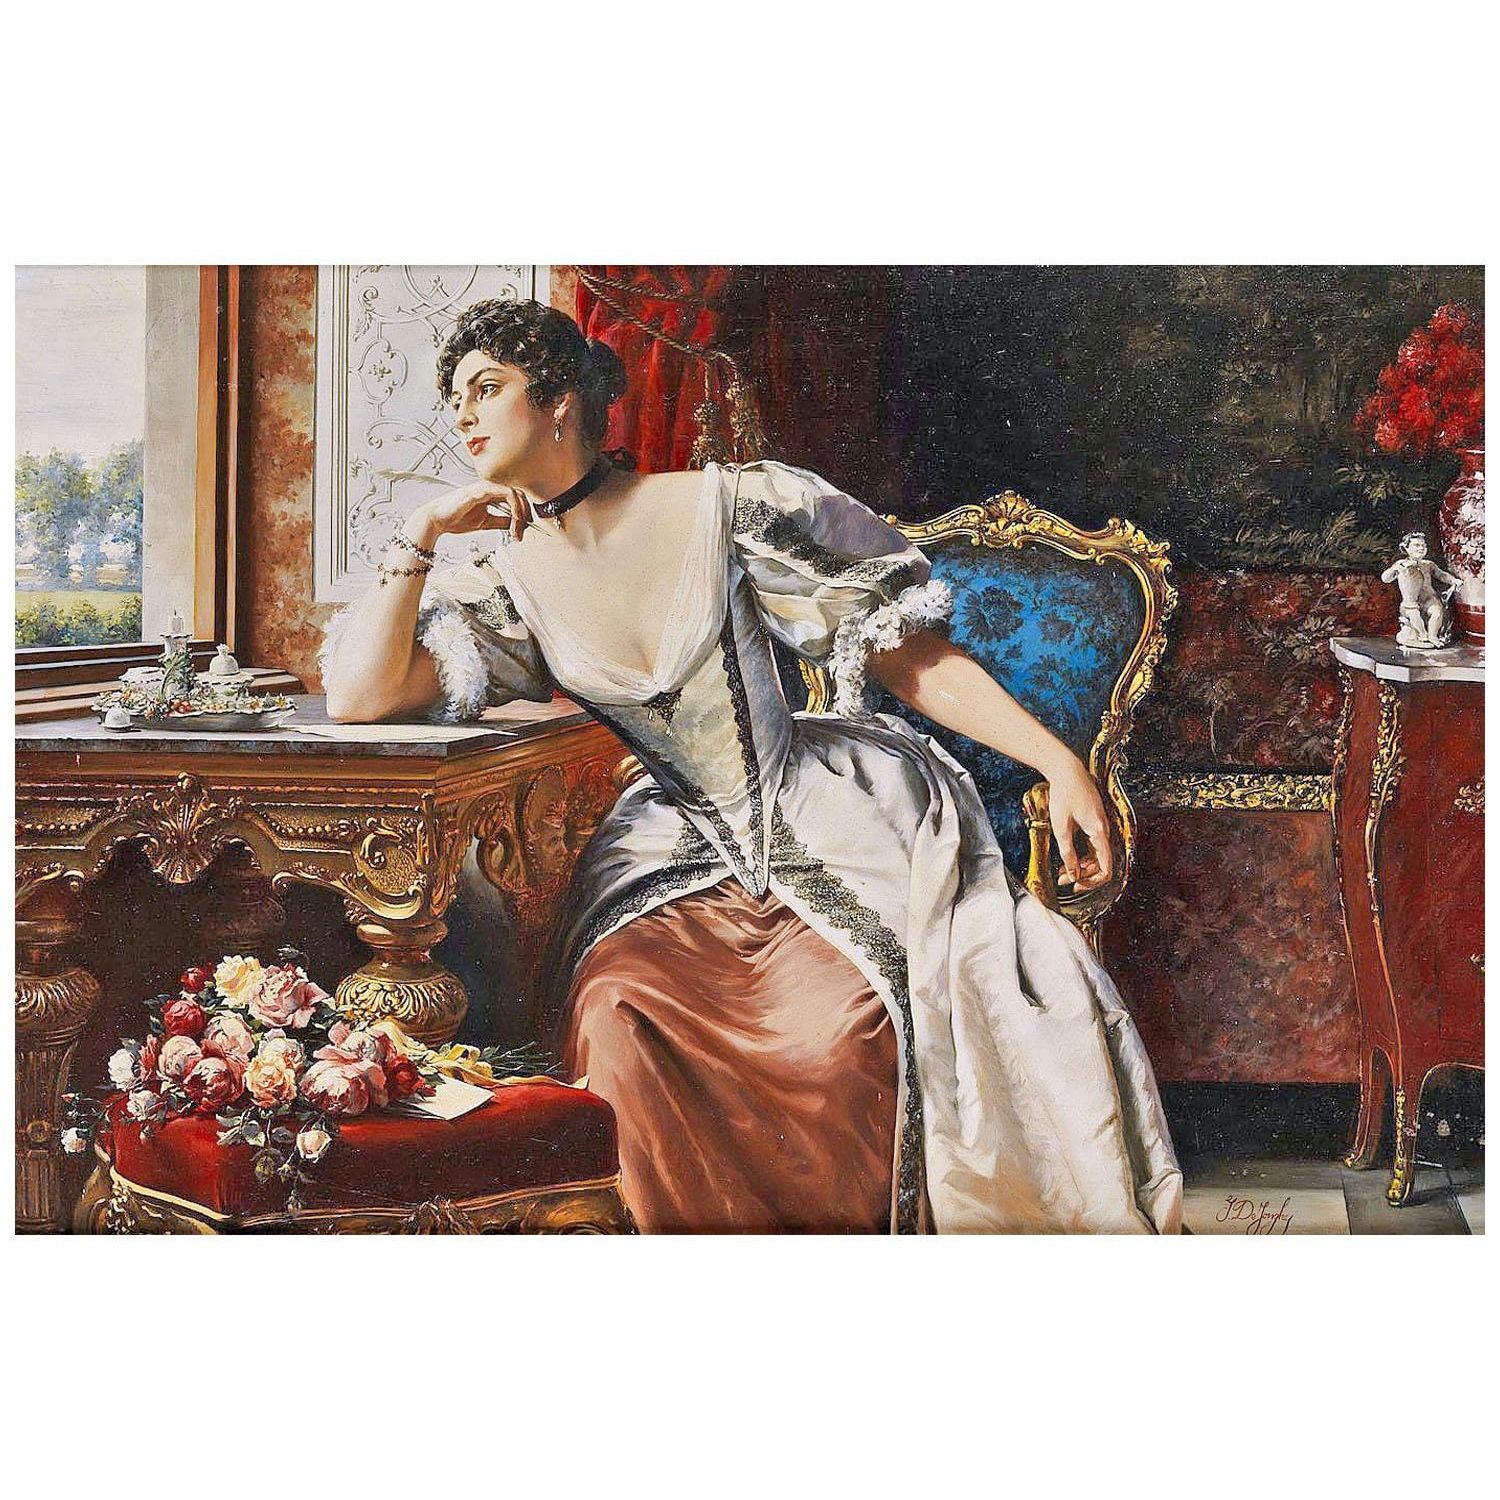 Gustave De Jonghe. Pensées en écrivant la lettre. 1871. Private collection